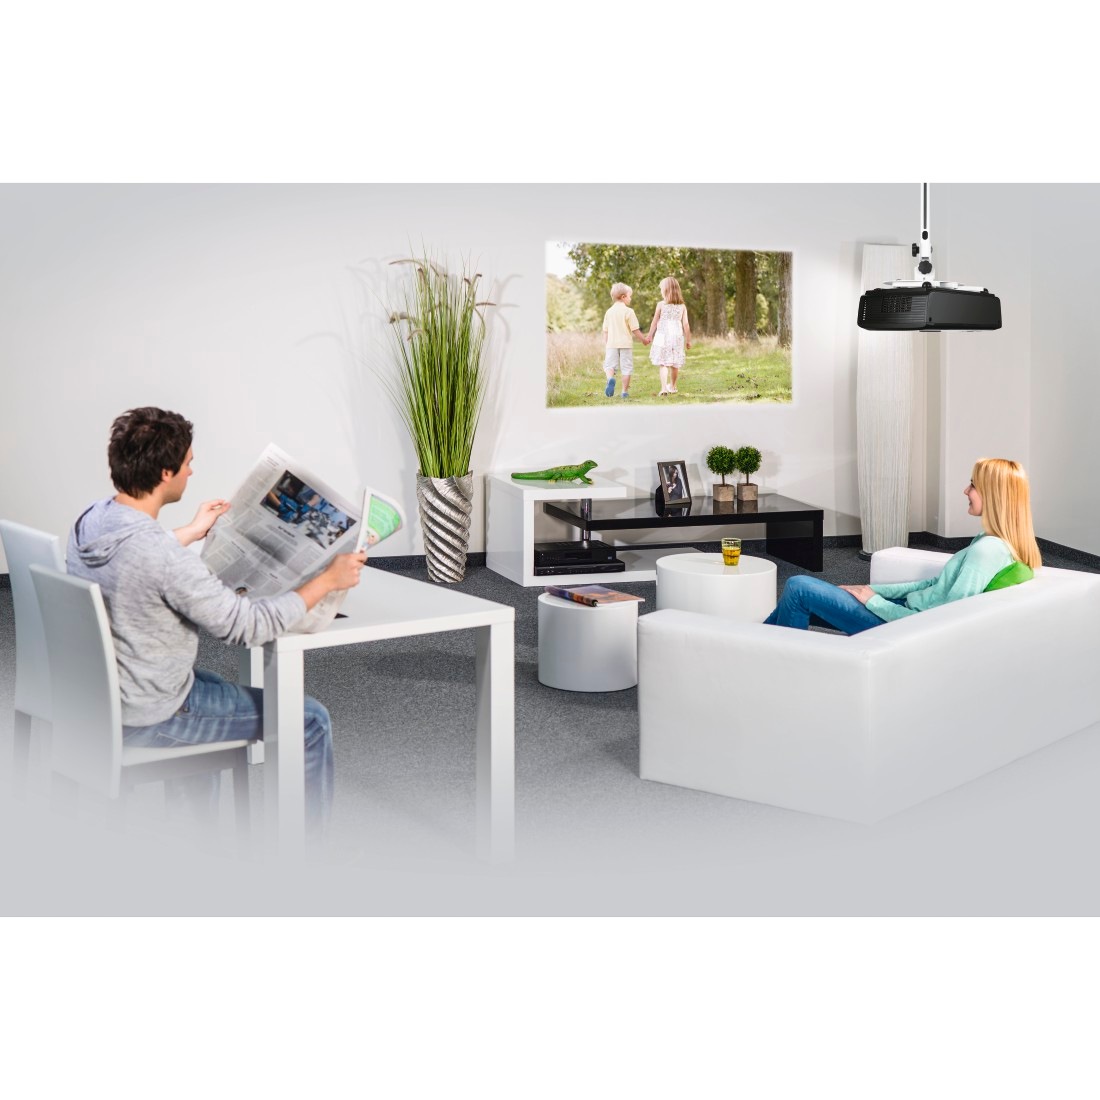 Hama Beamer-Deckenhalterung »Deckenhalterung für Beamer und Projektoren, Wandhalterung, Farbe weiß«, 360° schwenkbar, höhenverstellbar, Traglast 15 kg, Stahlblech